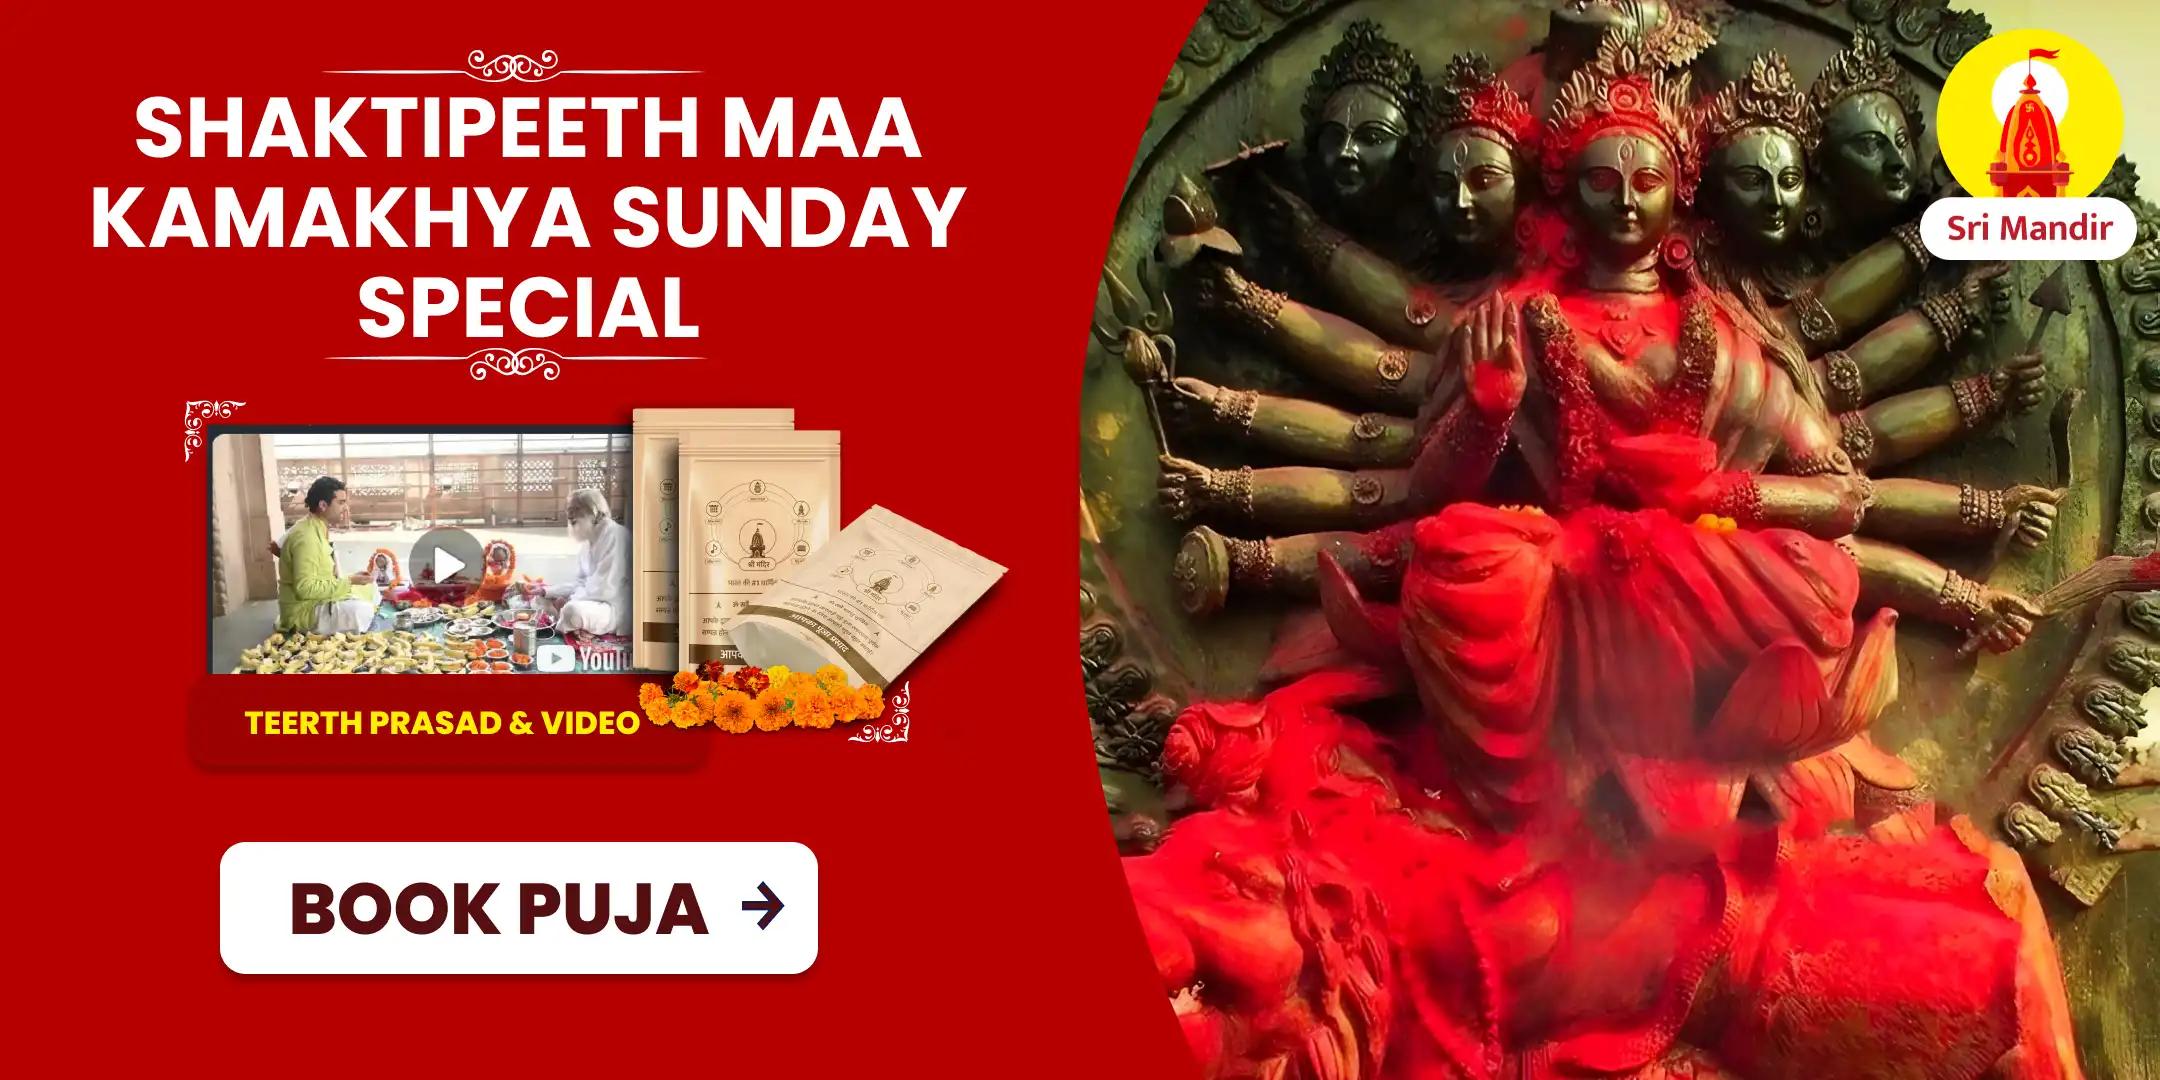 Shaktipeeth Sunday Special Maa Kamakhya Tantrokta Maha Yagya for Fulfilment of All Desires